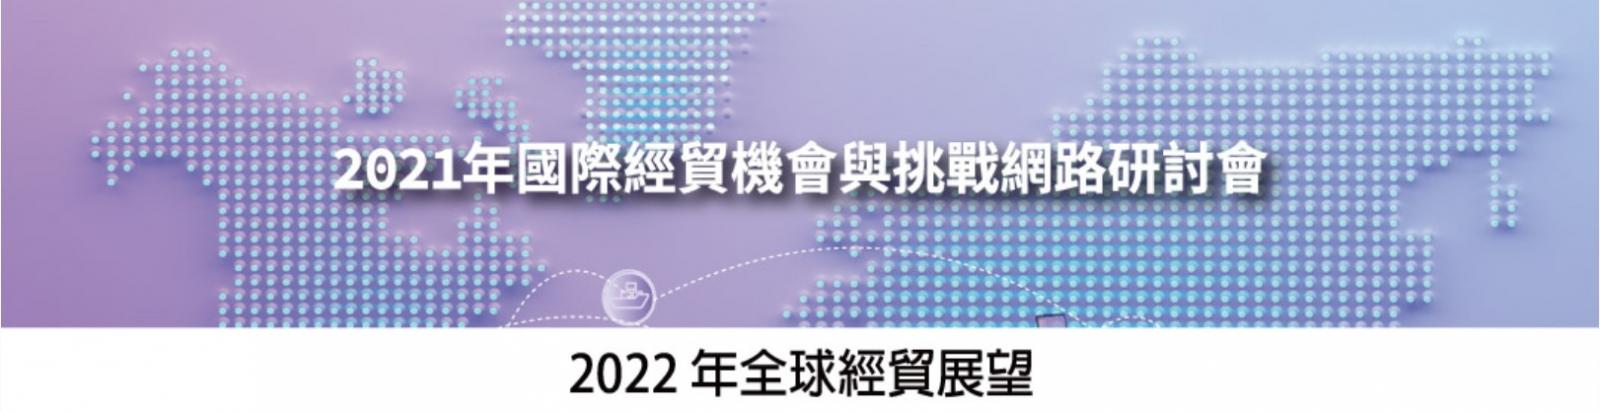 2021年國際經貿機會與挑戰網路研討會：2022年全球經貿展望